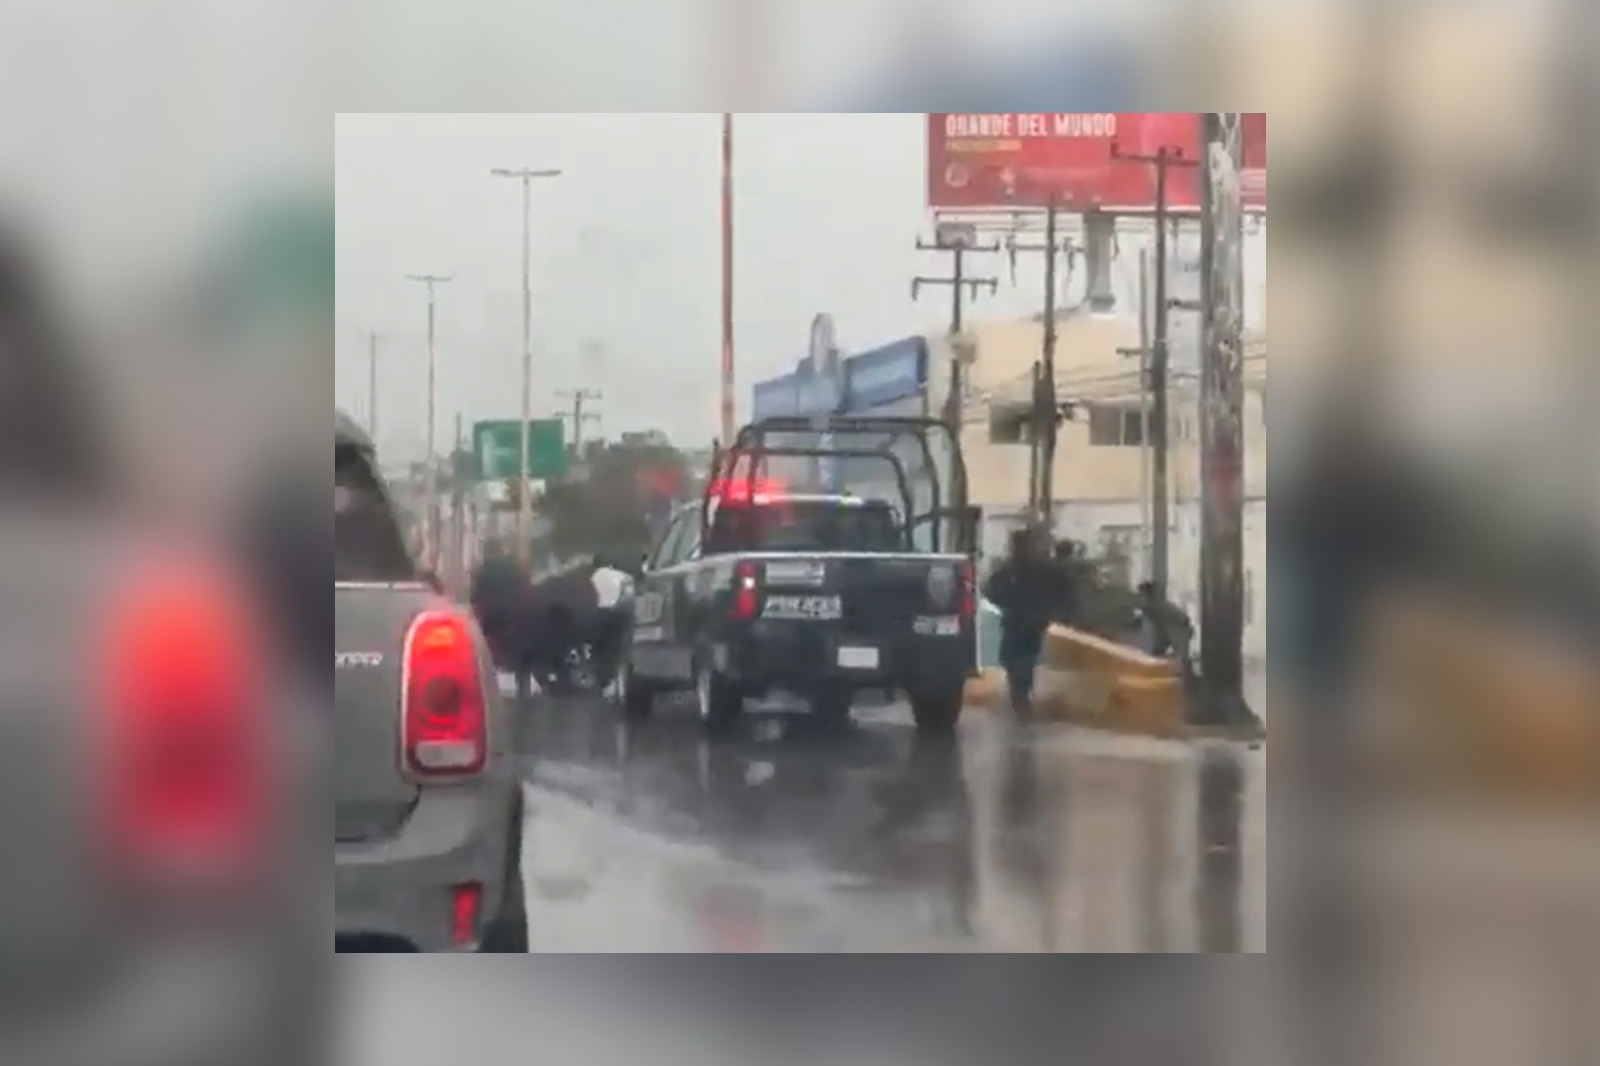 Captan el momento de la detención de sospechosos en Bonfil, Cancún: VIDEO